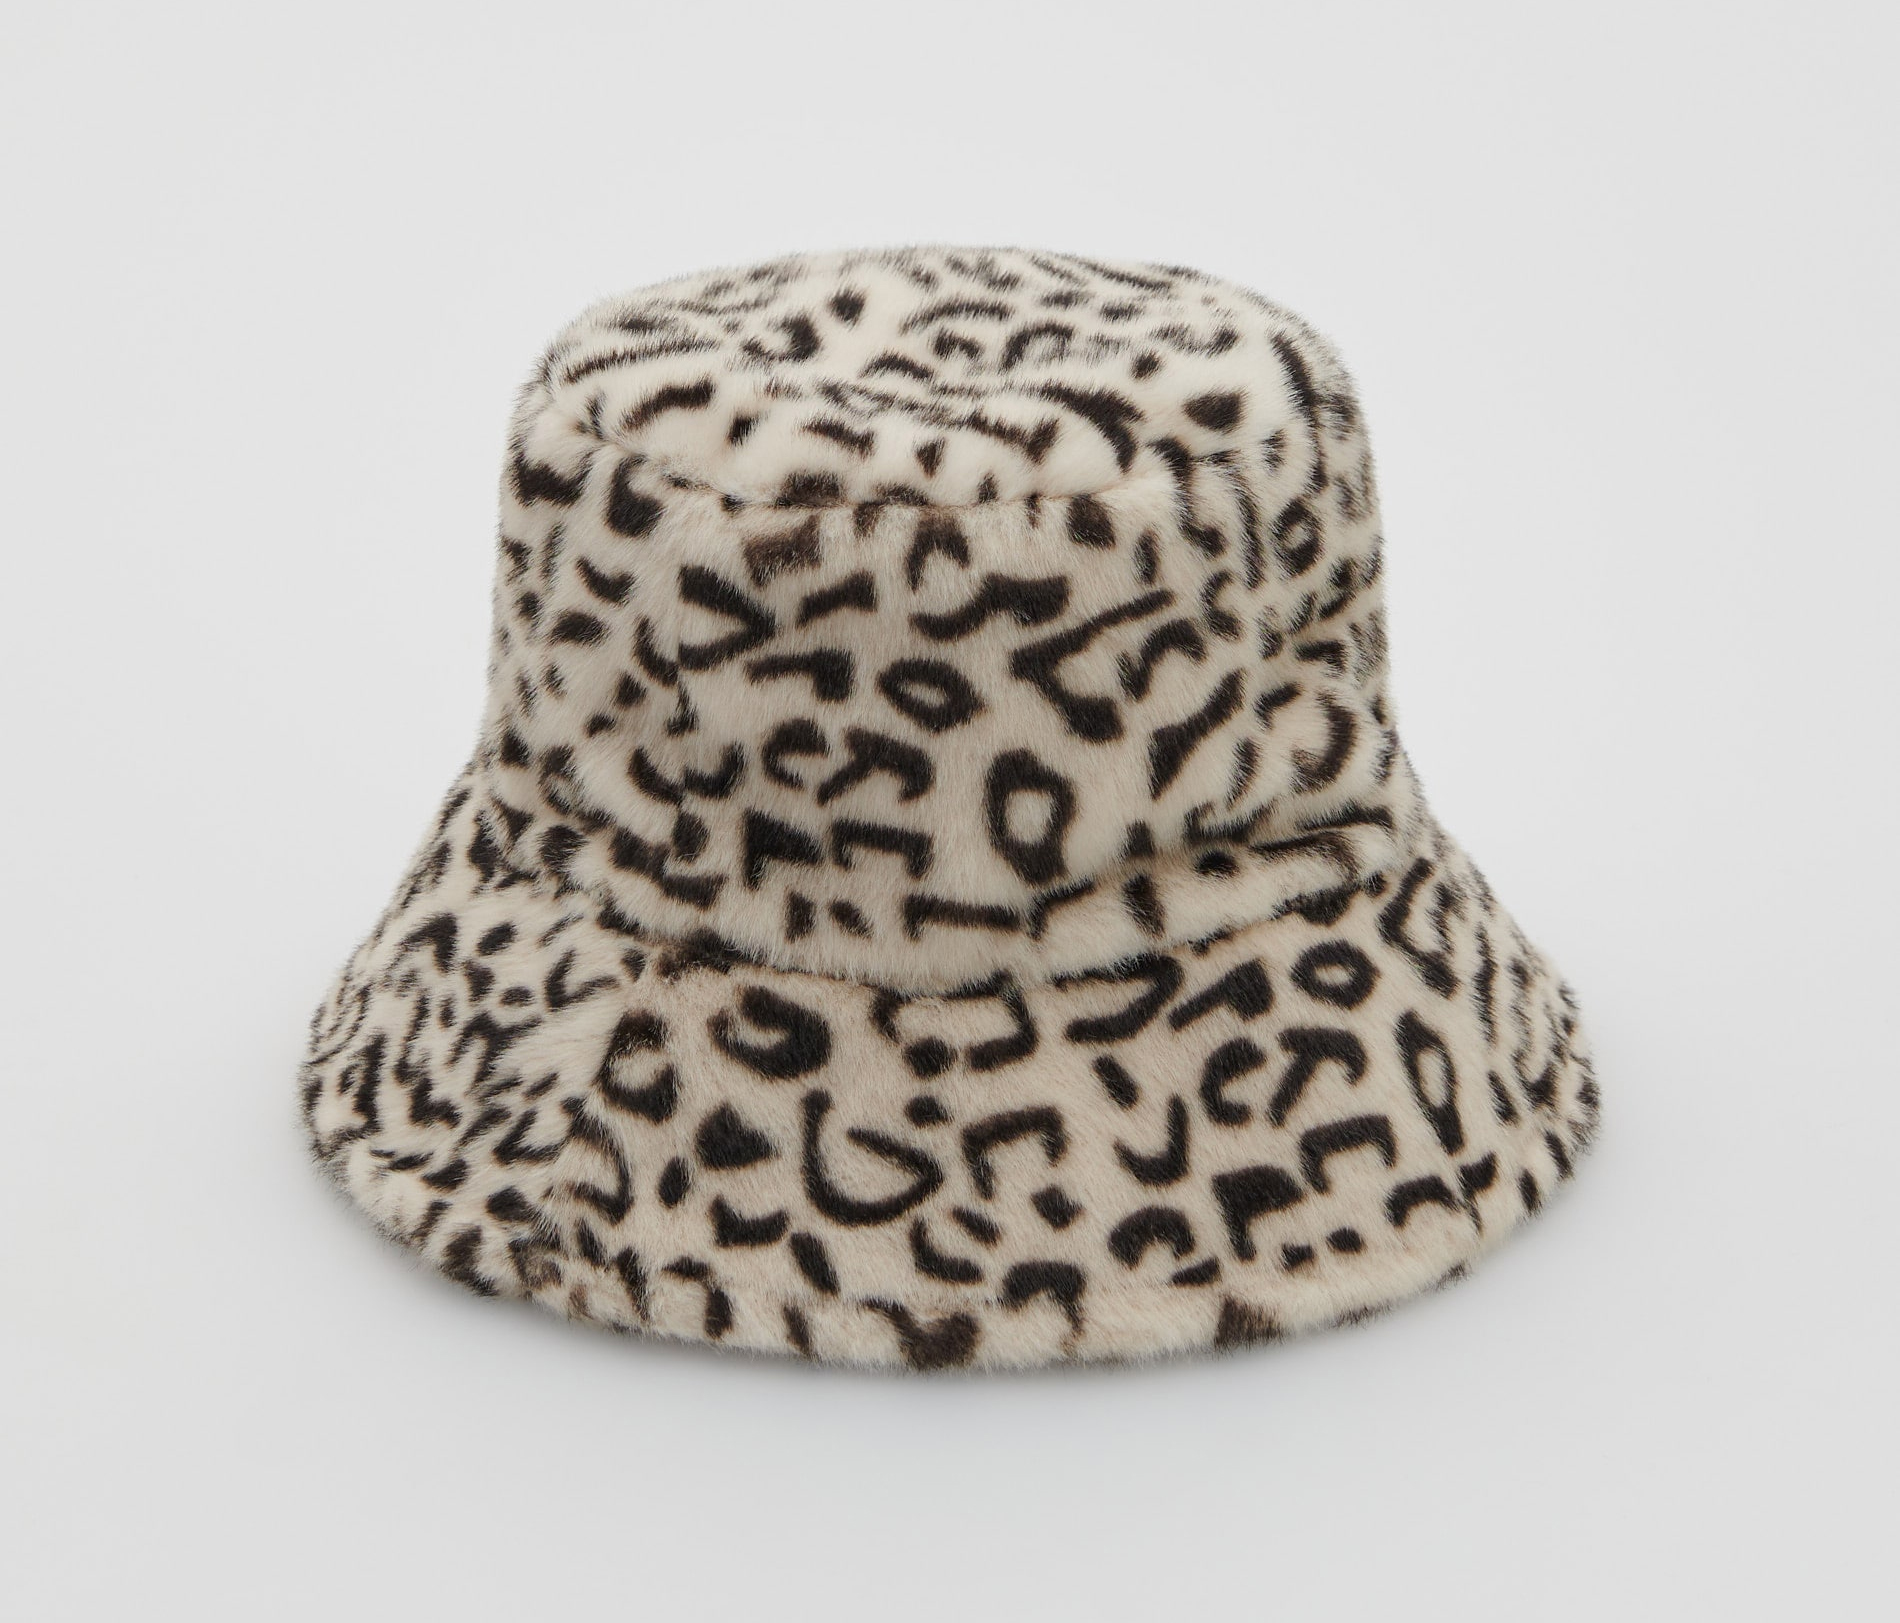 модный головной убор зима 2022 теплое на голову шапка панама мех чернаябелая принт леопард